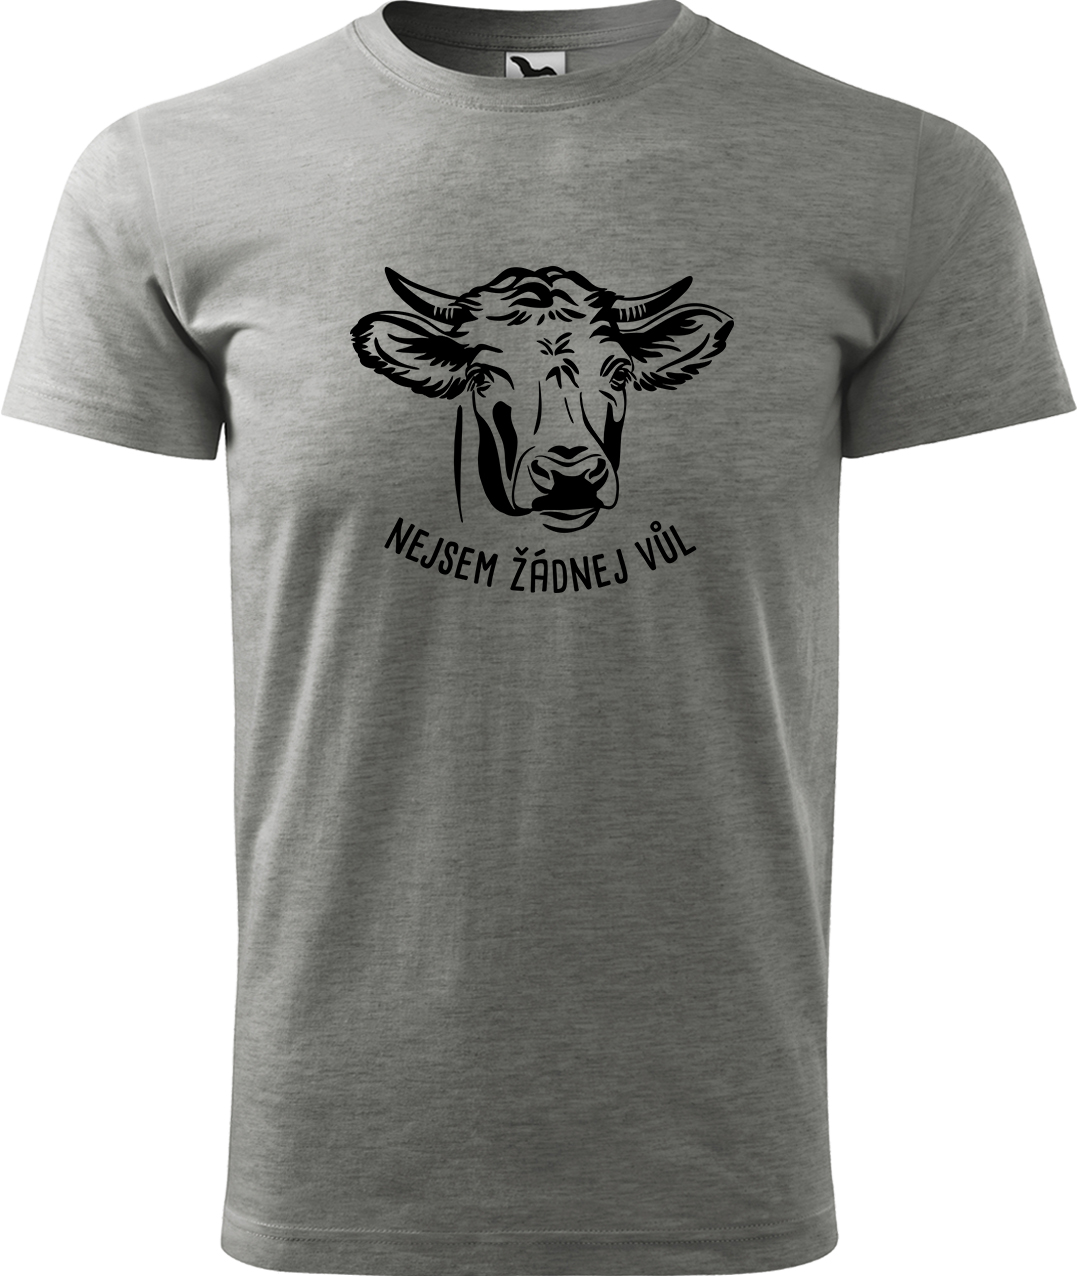 Pánské tričko s krávou - Nejsem žádnej vůl Velikost: M, Barva: Tmavě šedý melír (12)